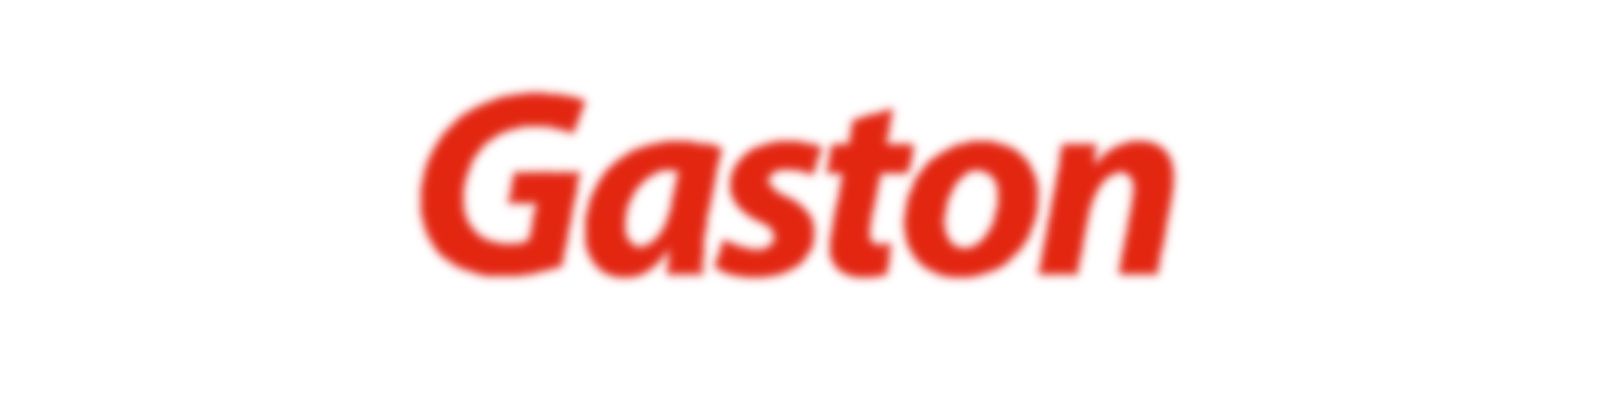 WhatsApp Gaston: Telefones e Canais de contato!